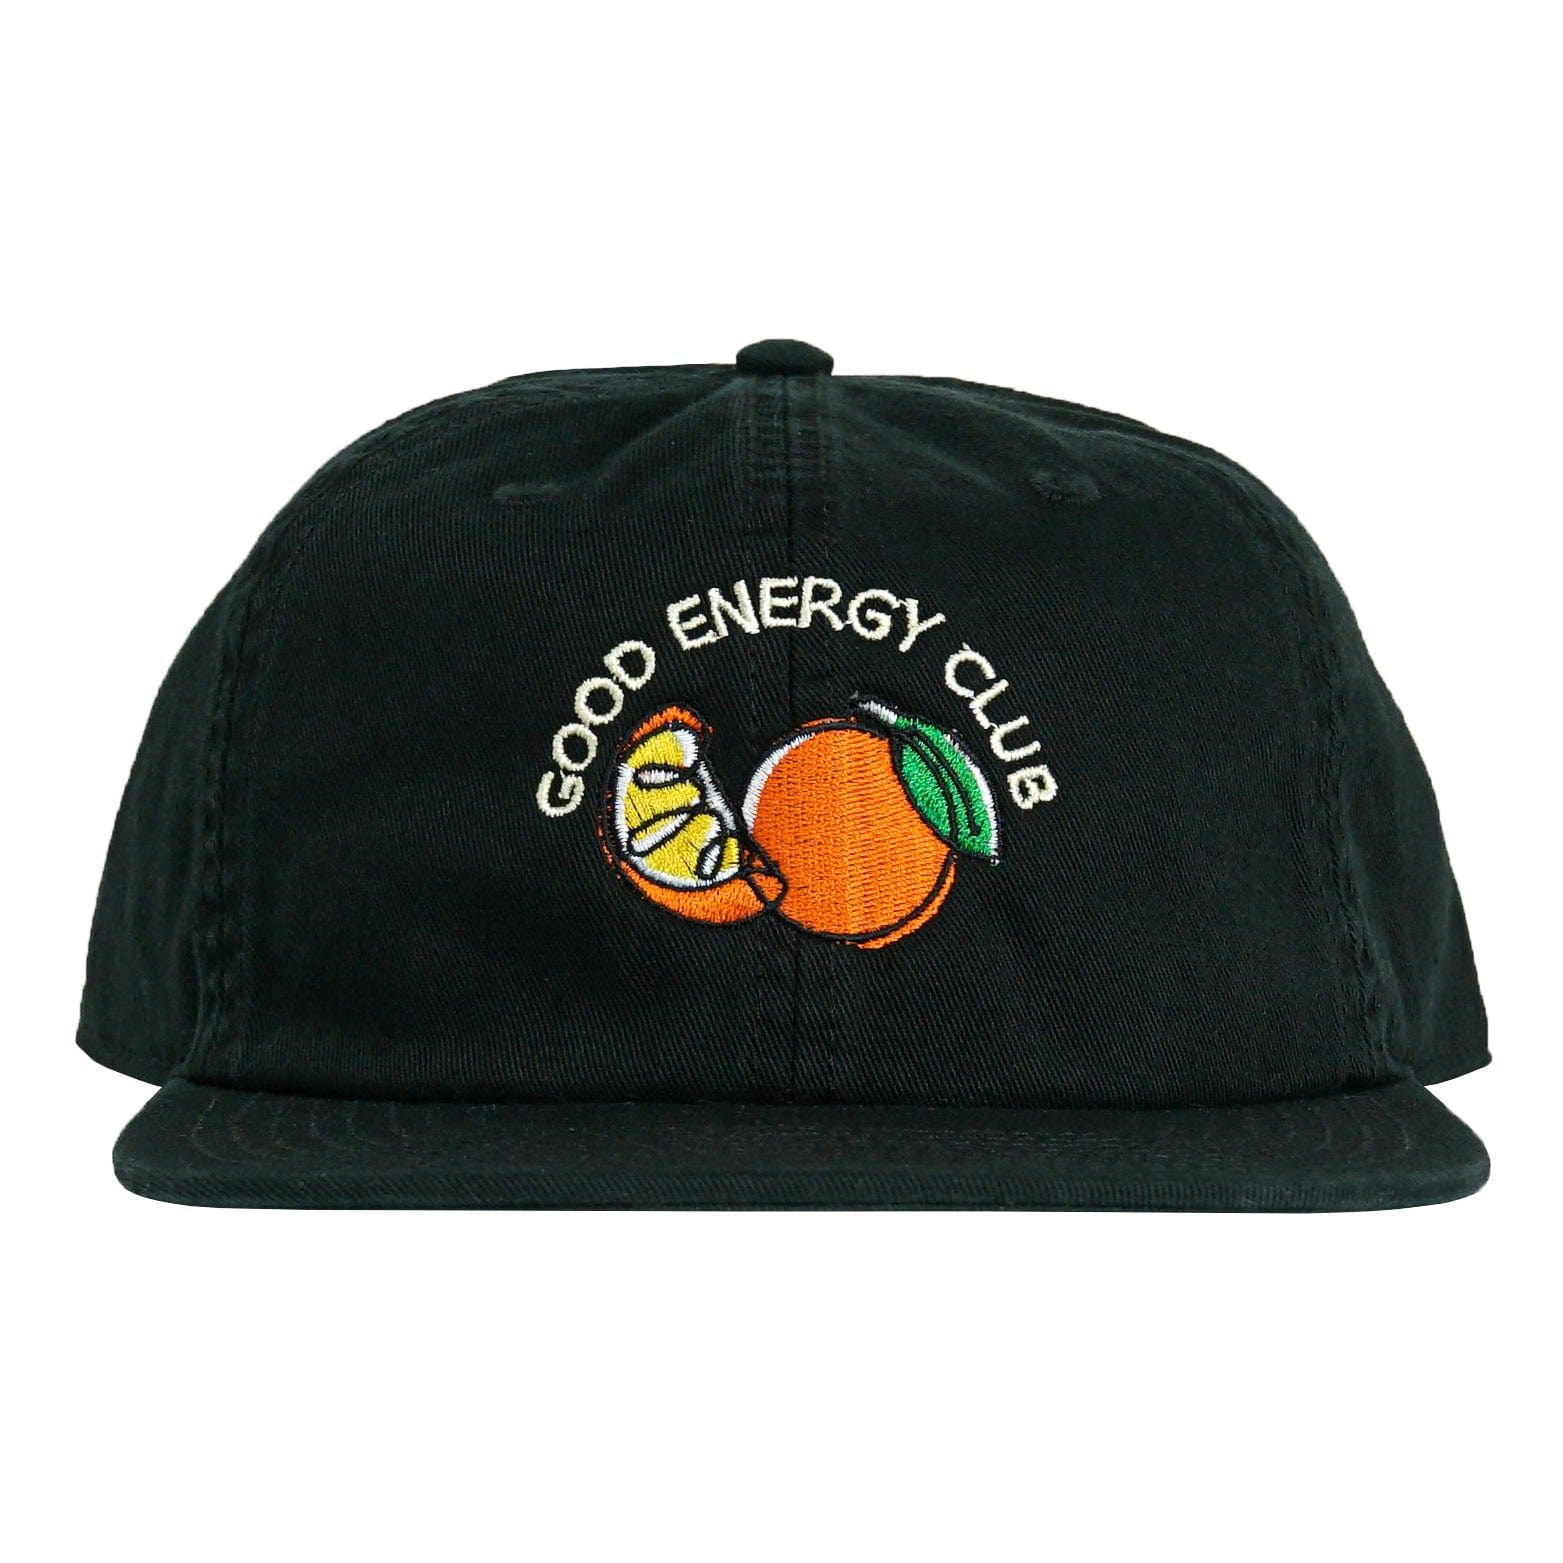 SOF Good Energy Club Classic Cap in black